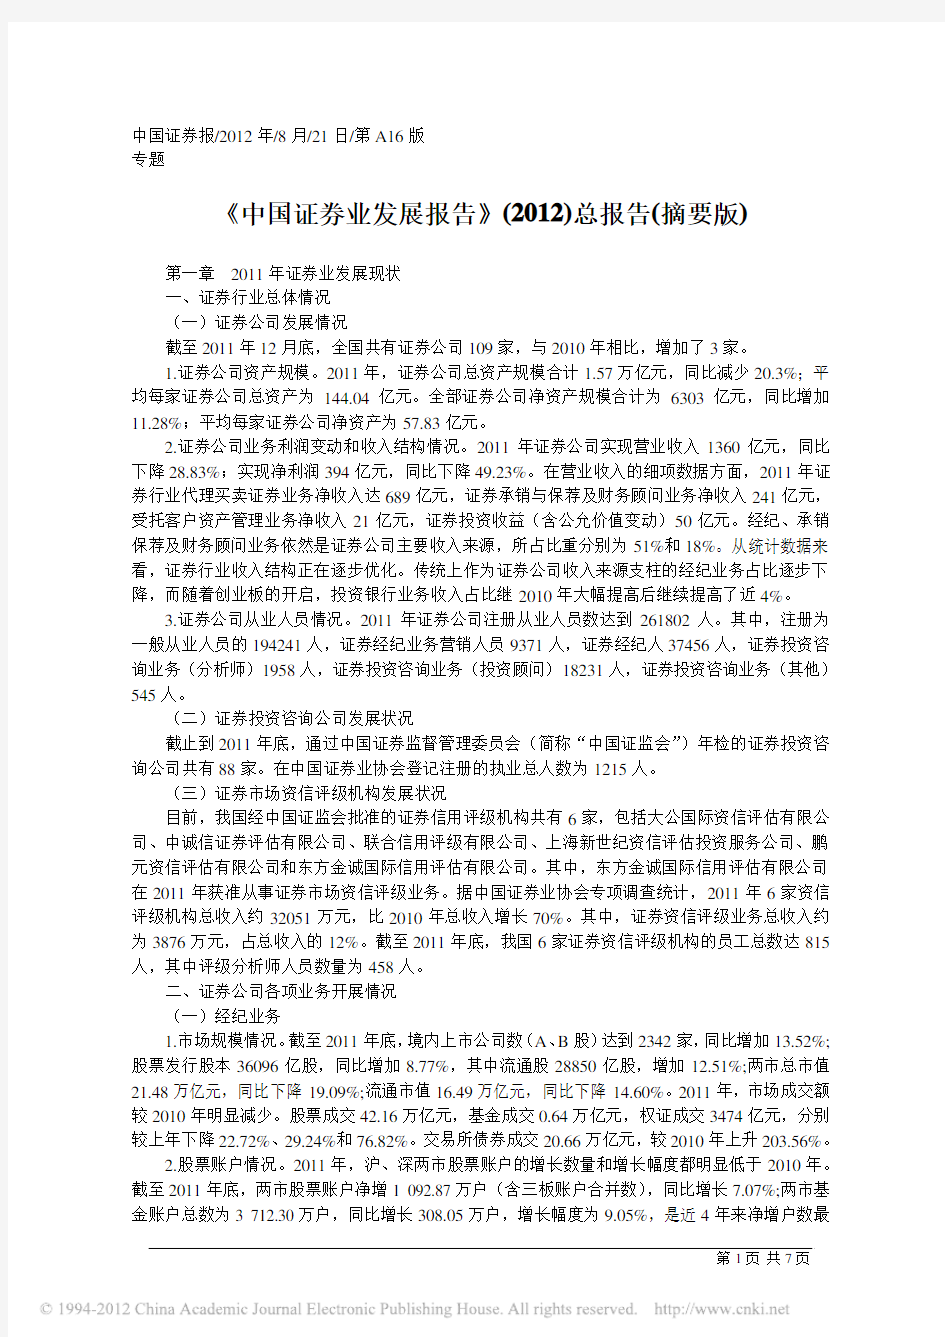 中国证券业发展报告(2012年)